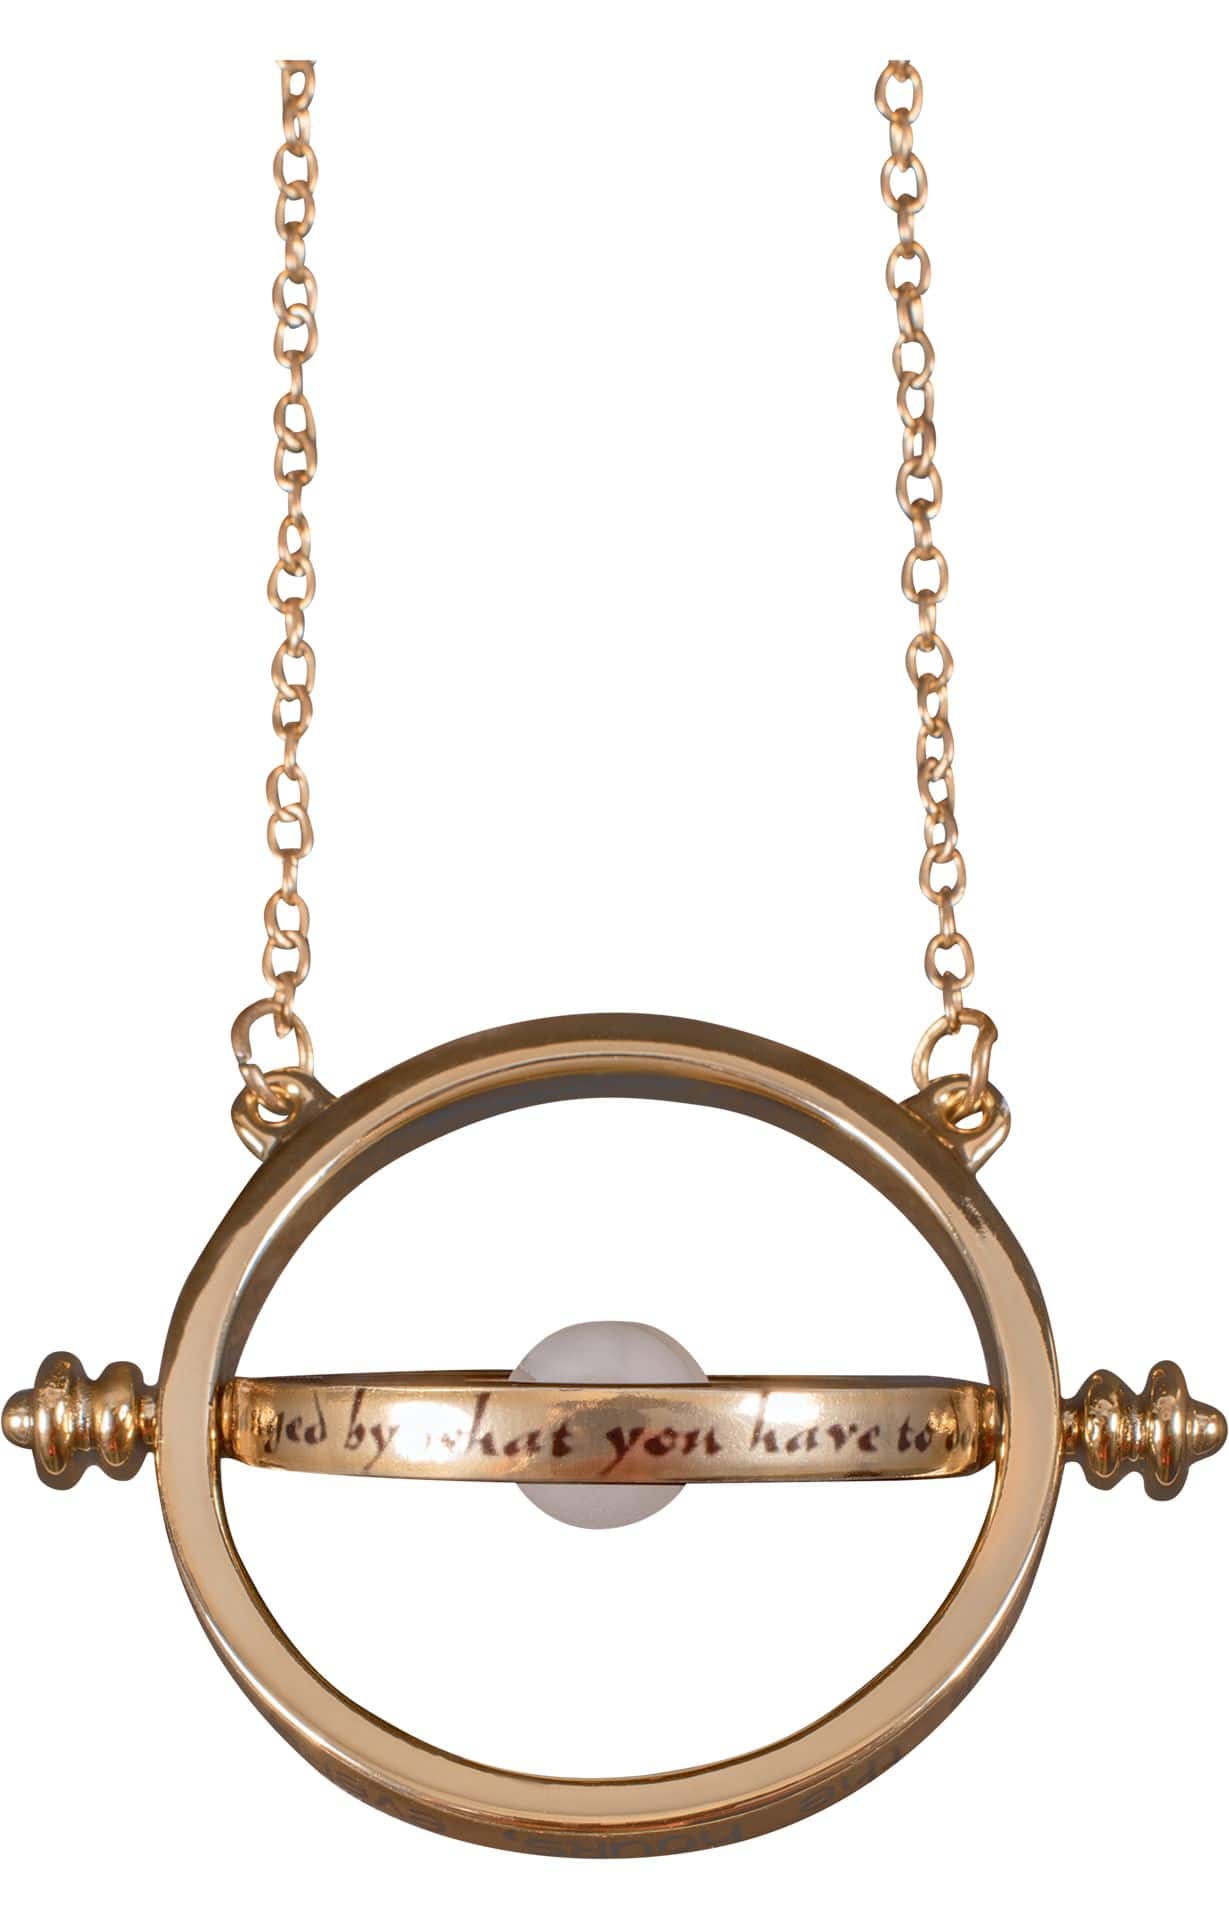 Time Turner Pendant Necklace | Harry Potter Shop UK